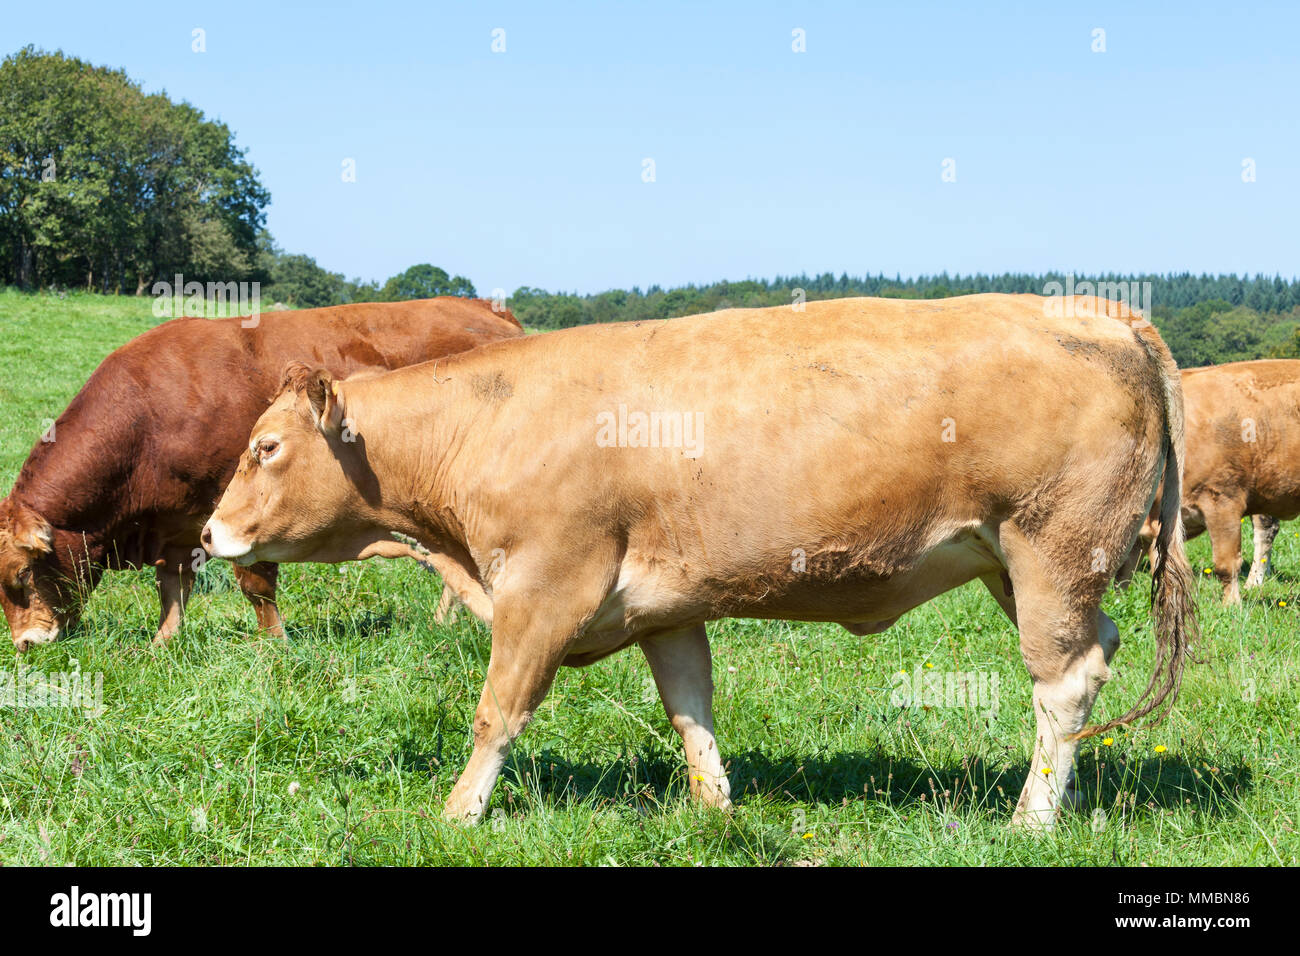 Limousin rind kuh gehen über einen üppigen grünen pasturein Eine Nahaufnahme Seitenansicht mit einem Stier und andere Rinder hinter ihr Stockfoto